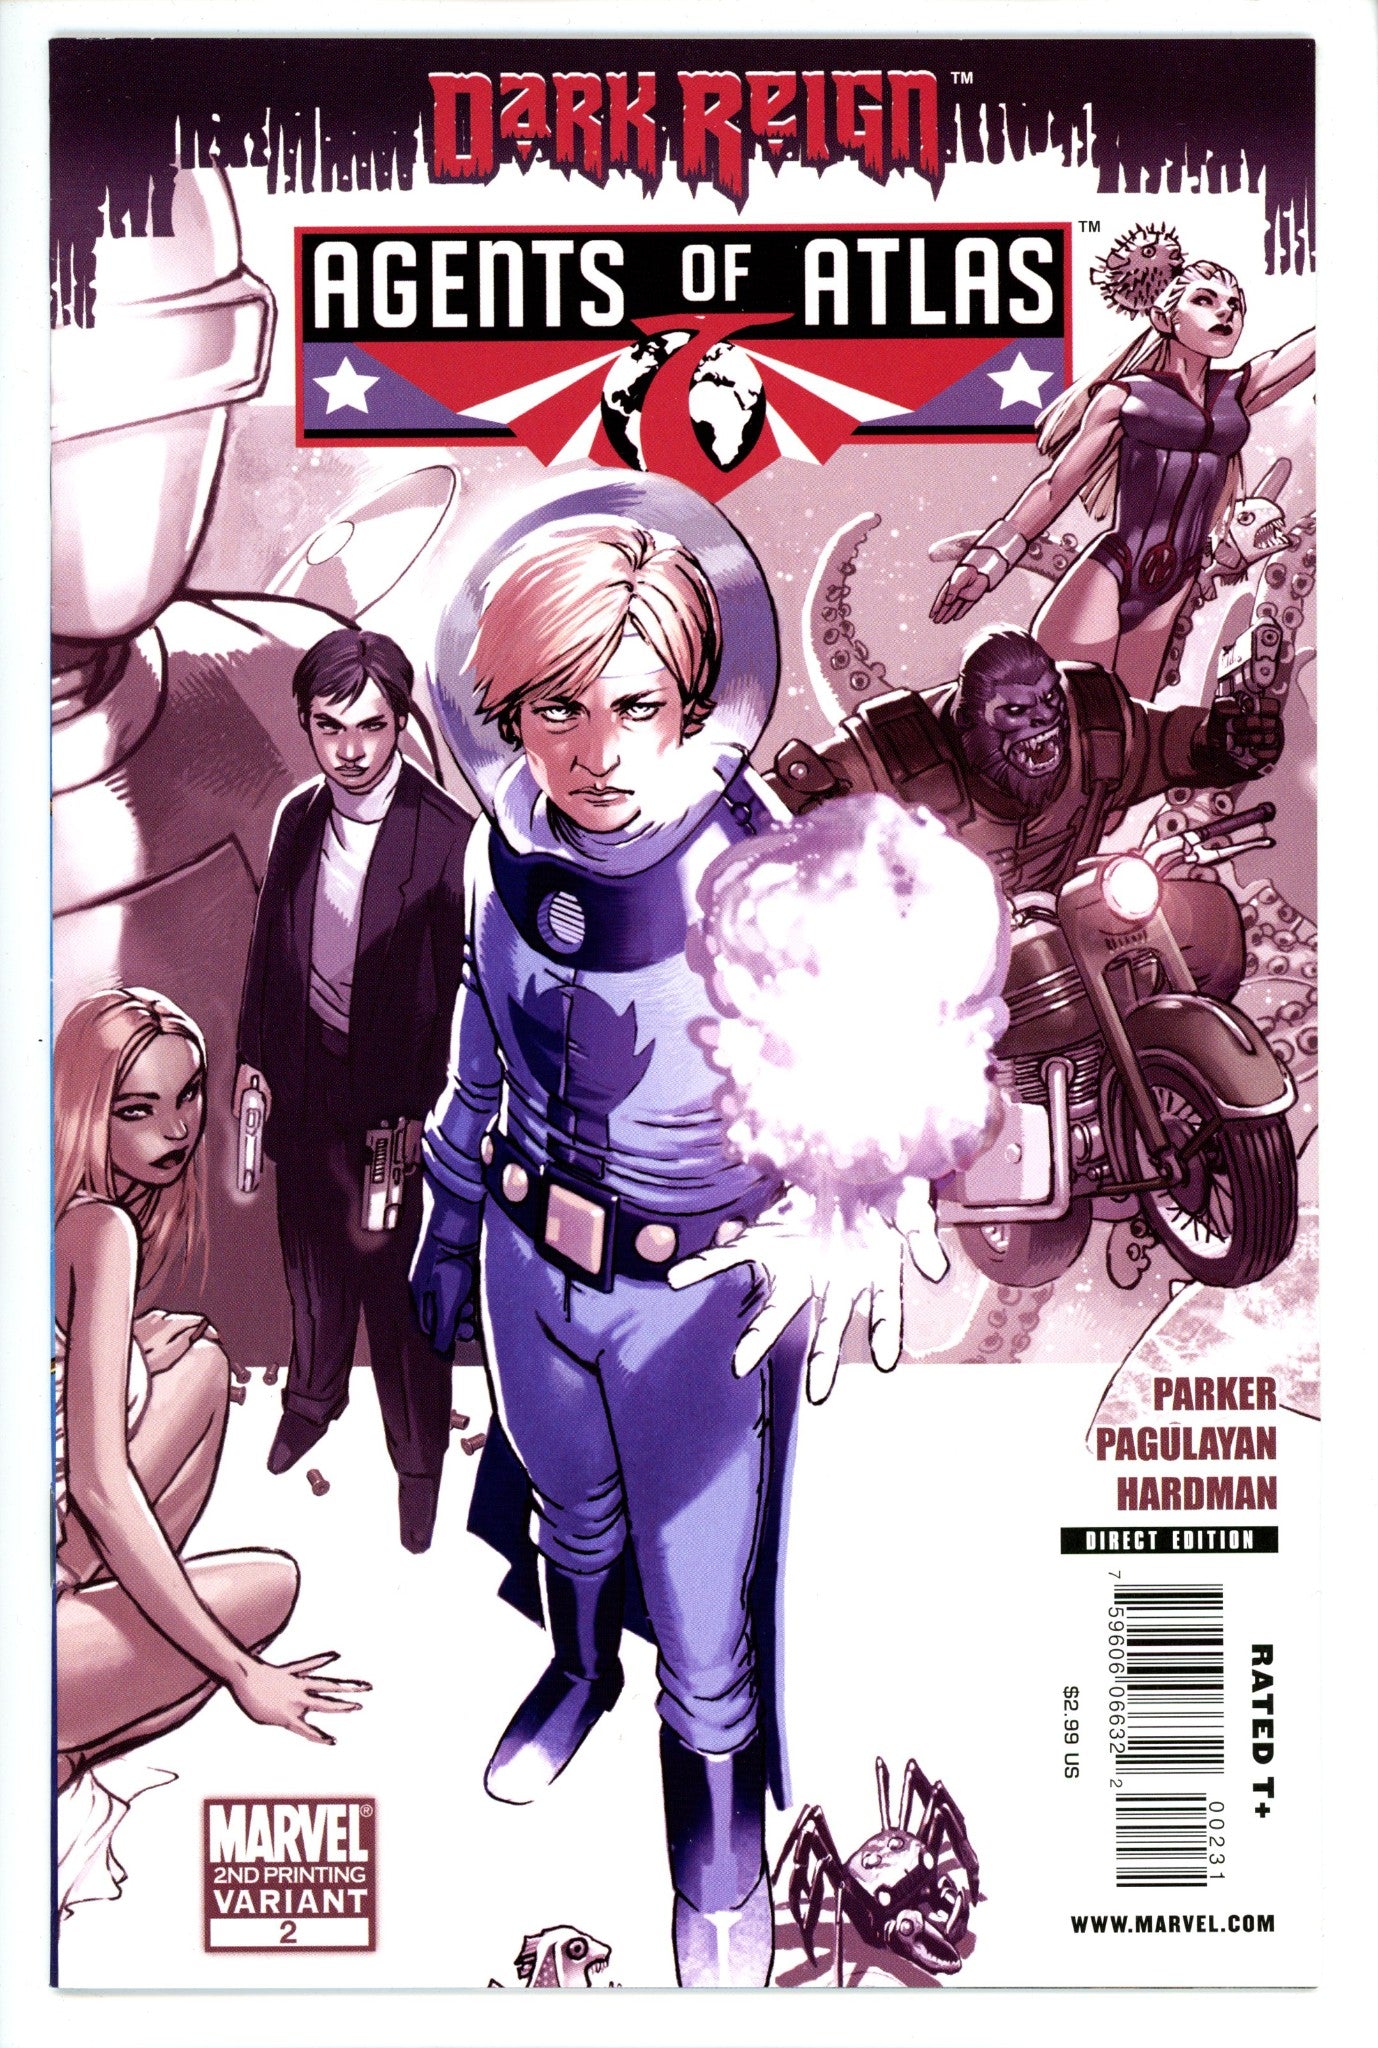 Agents of Atlas Vol 2 2 2nd Print-Marvel-CaptCan Comics Inc